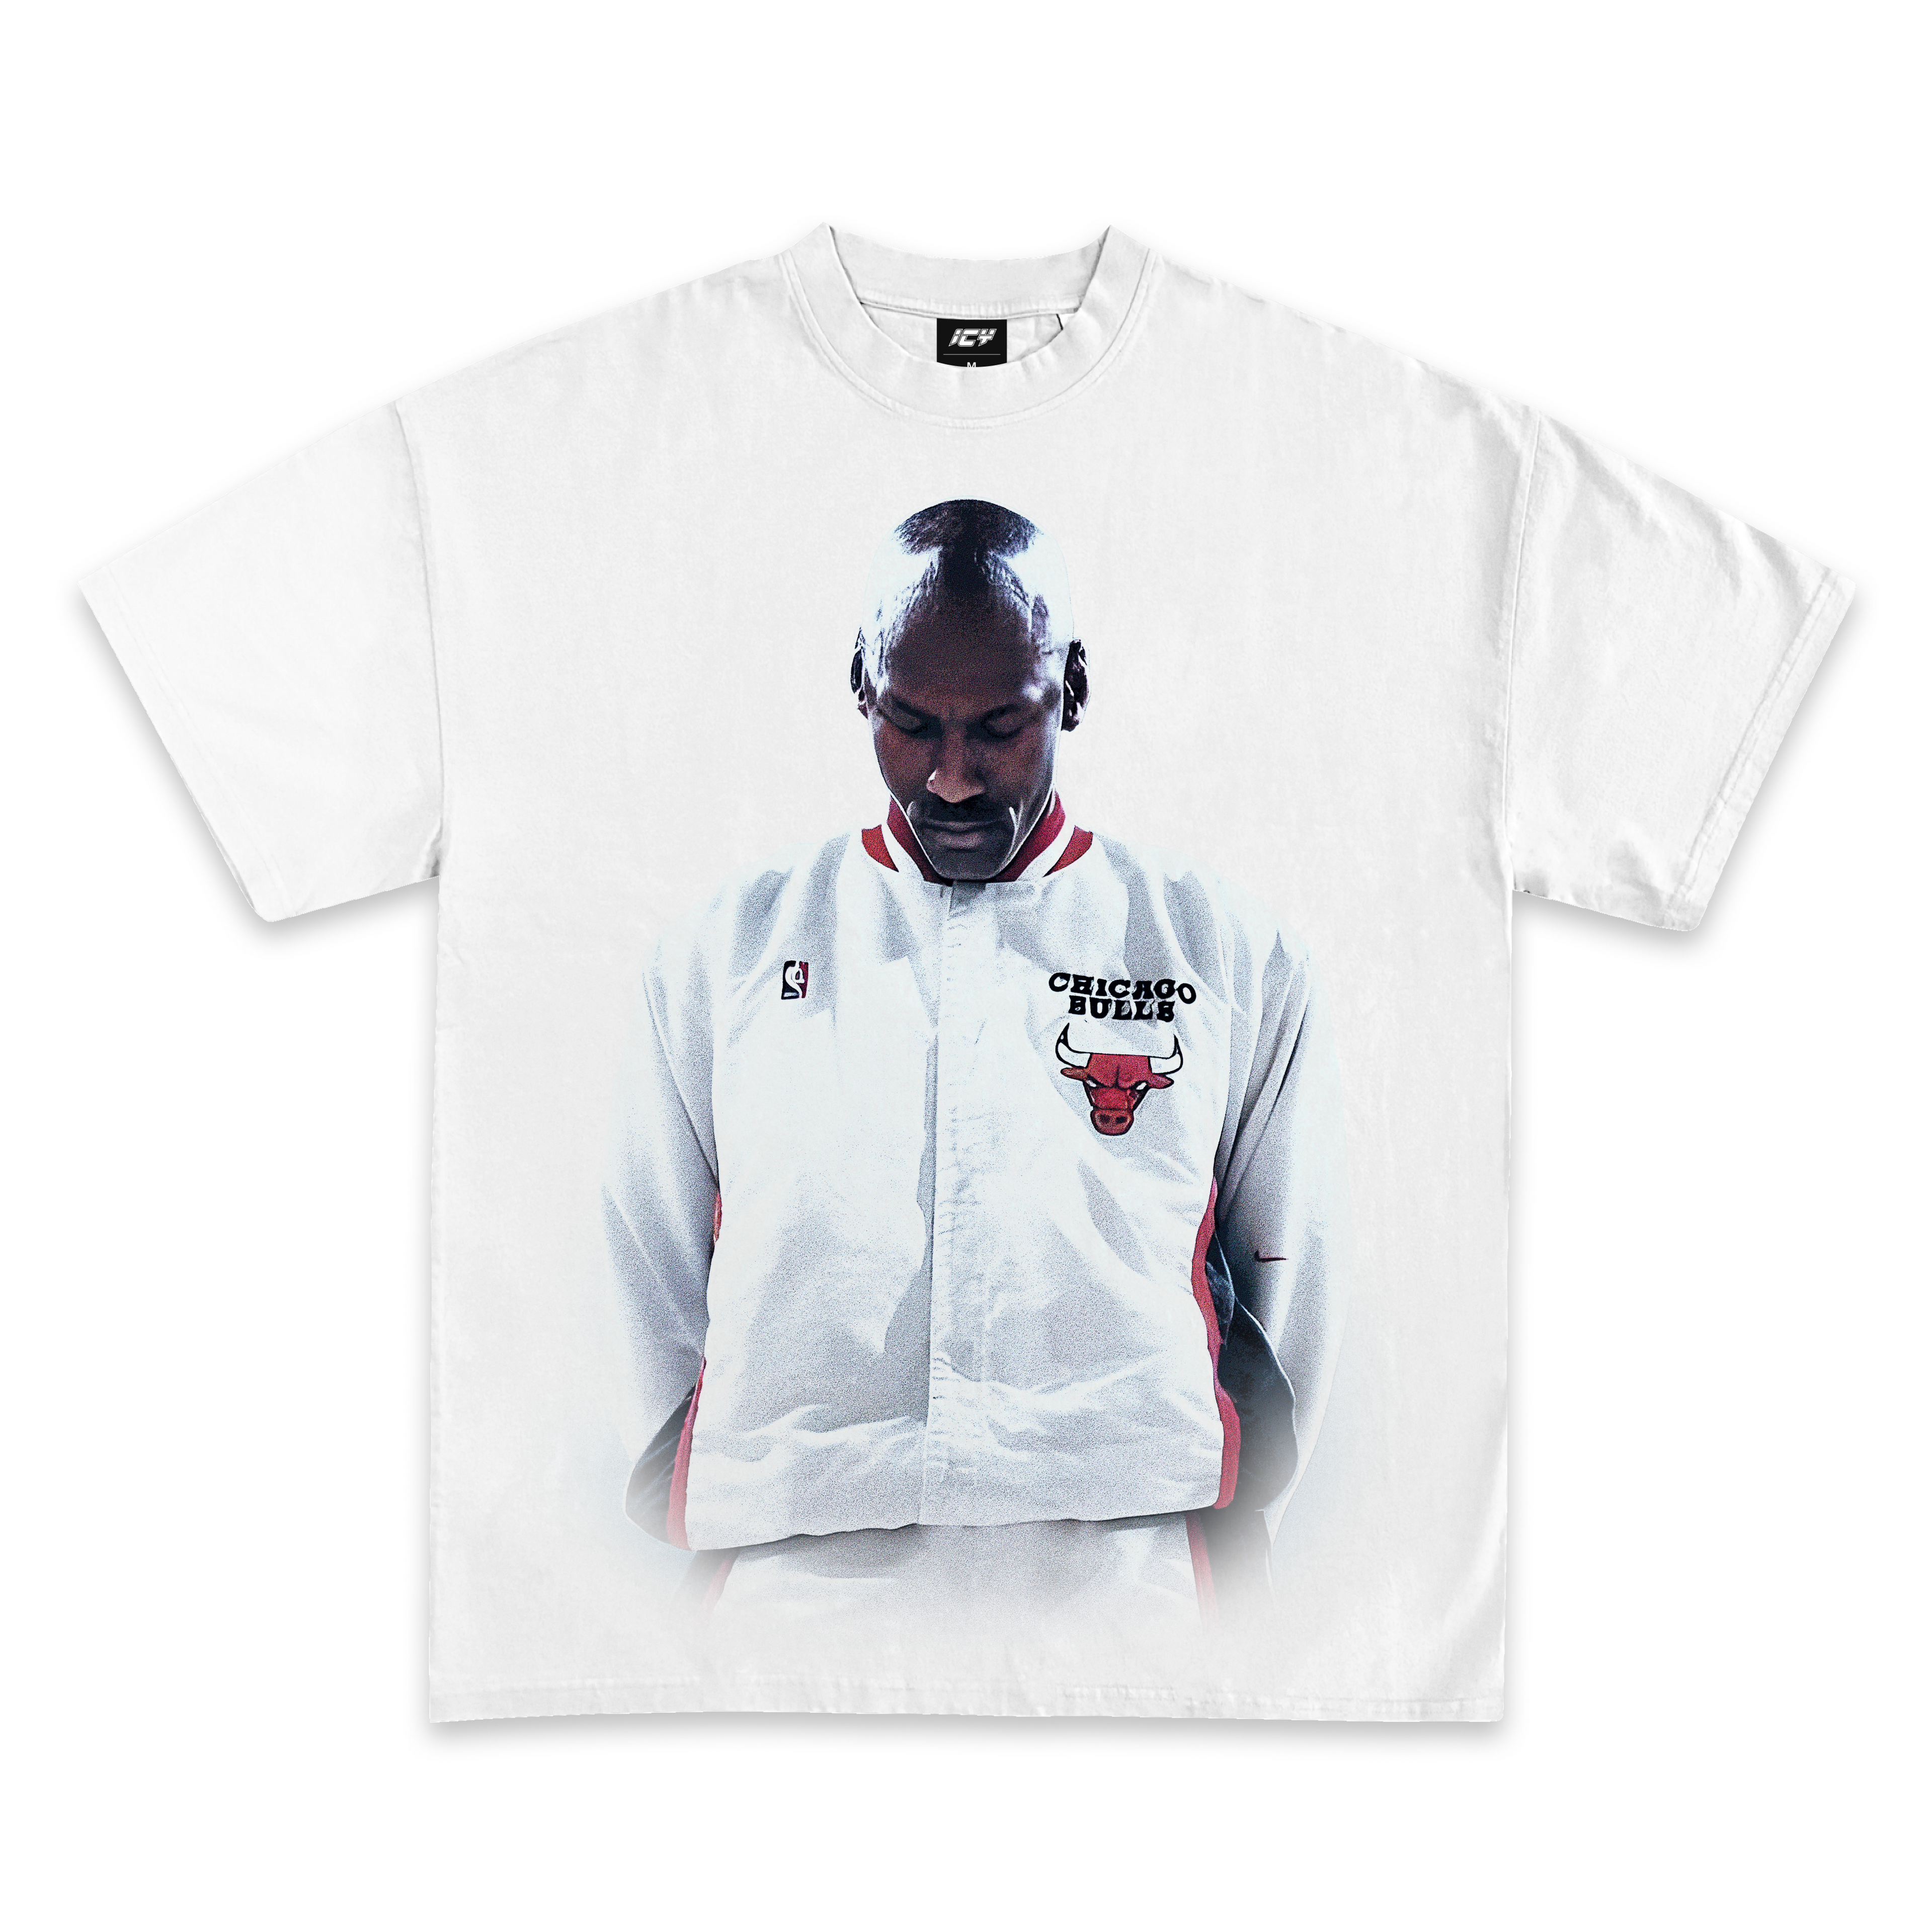 Michael Jordan "Pre-Game" Chicago Bulls T-Shirt